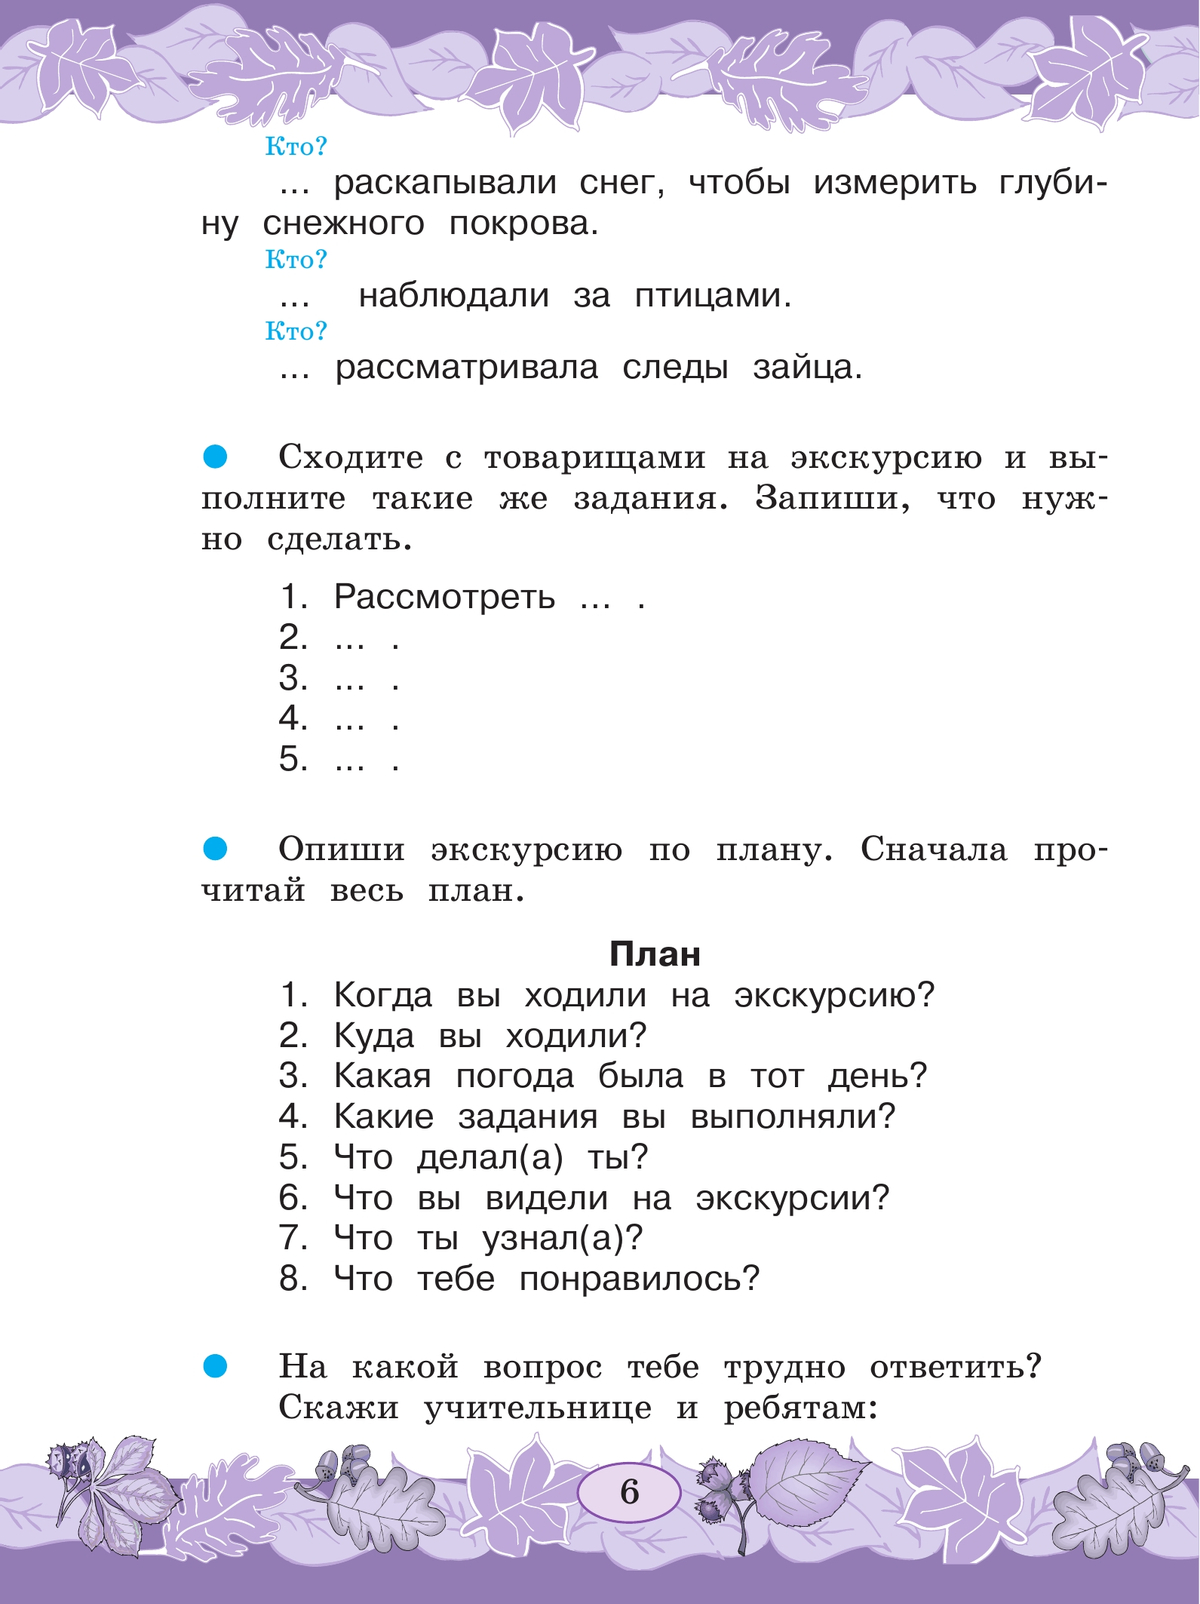 Русский язык. Развитие речи. 3 класс. Учебник. В 2 ч. Часть 2 (для глухих обучающихся) 10